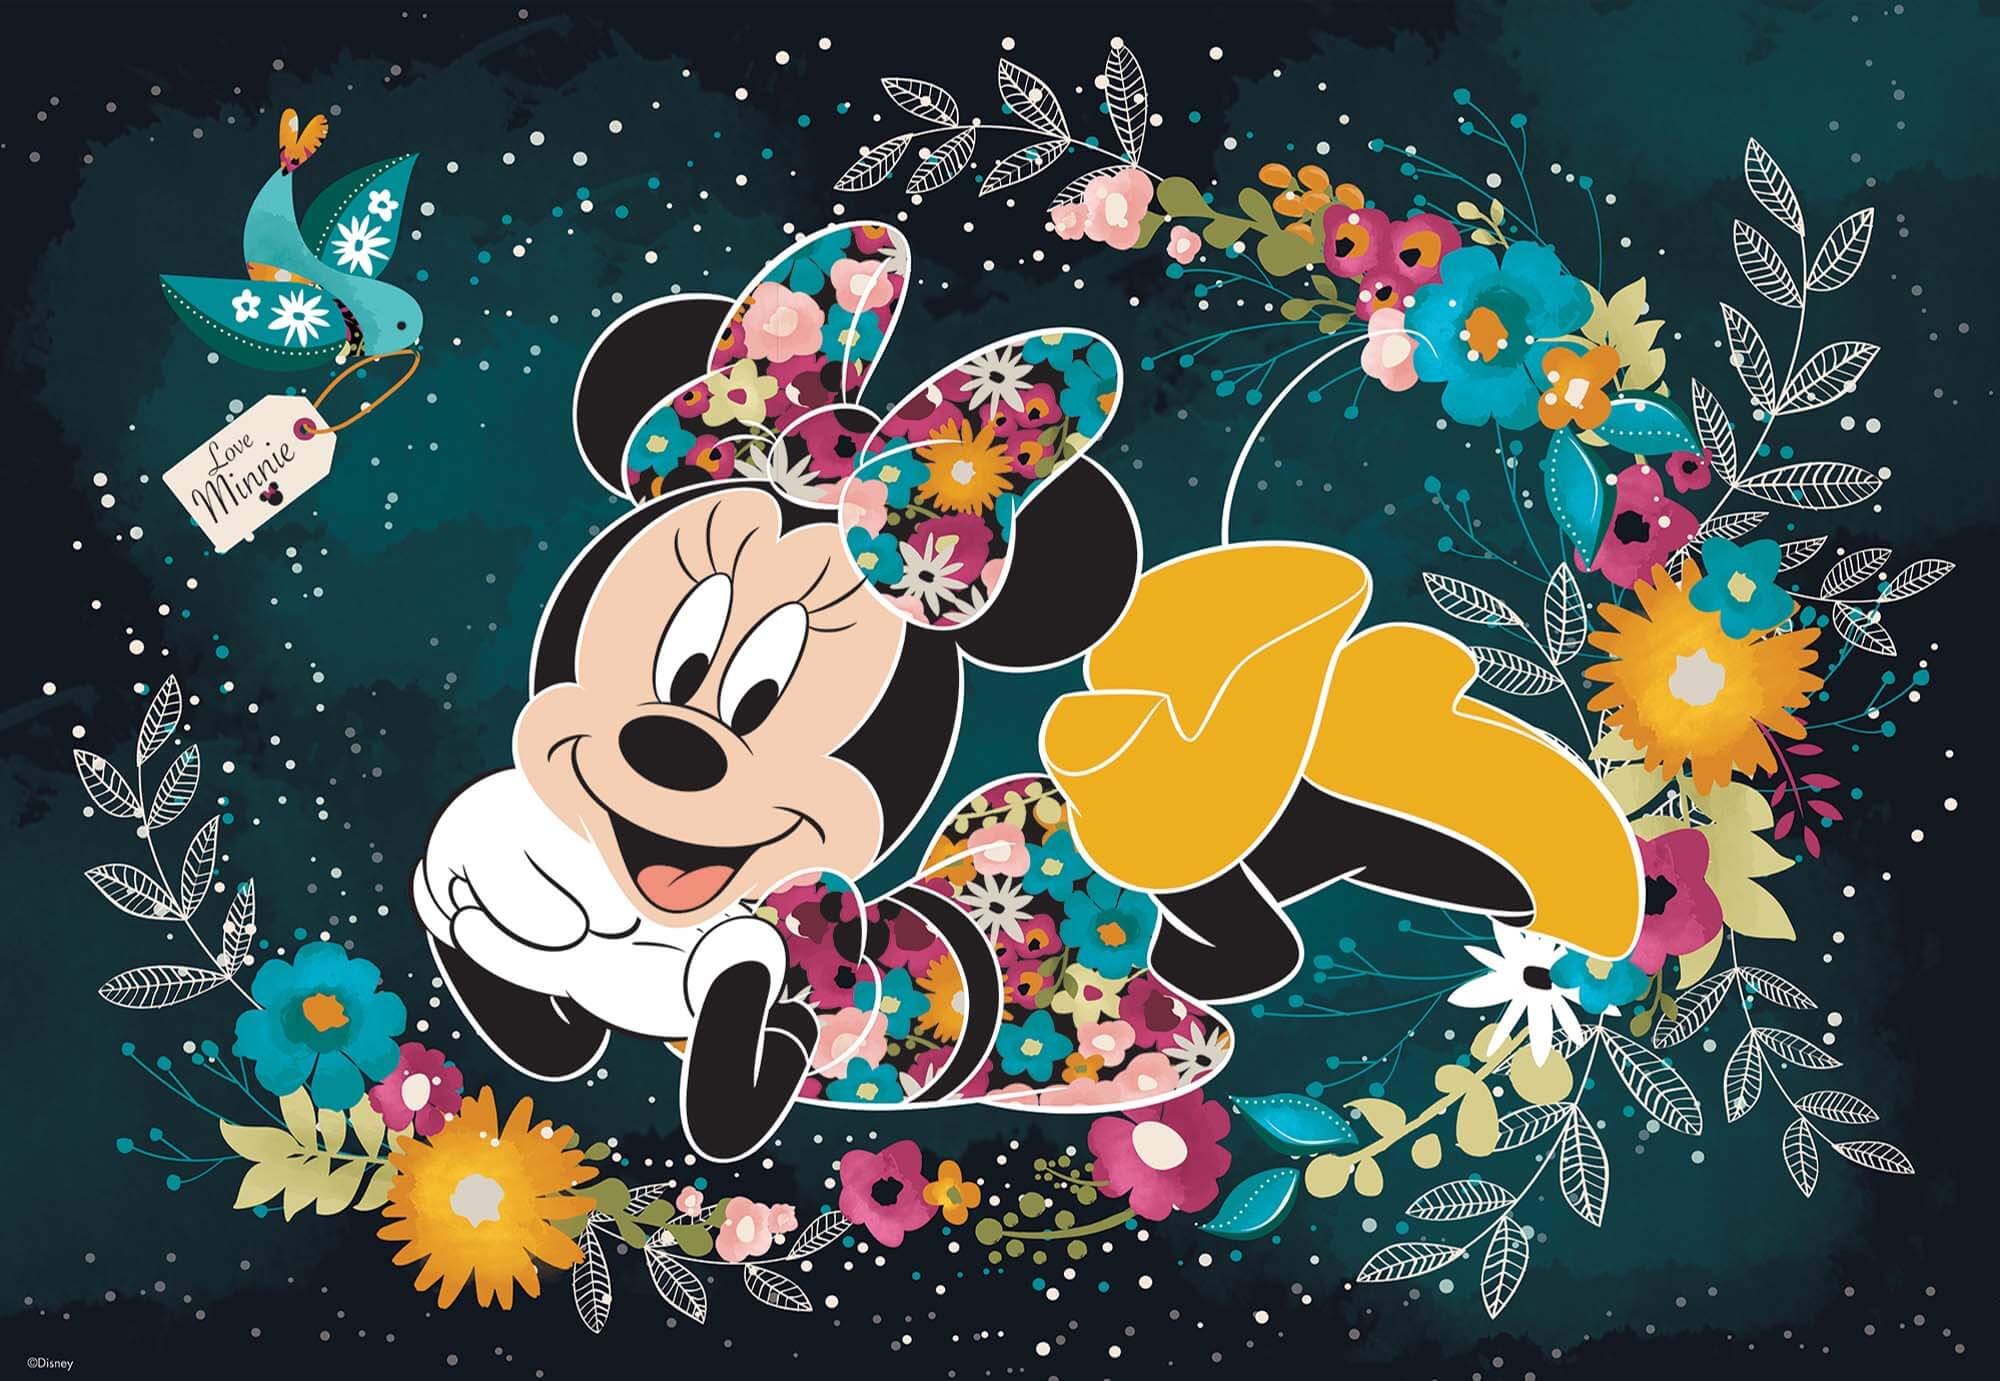 Detalles sobre 164x100 pulgadas Fotomural Fotomural Minnie Mouse Disney gigante decoración + adhesivo